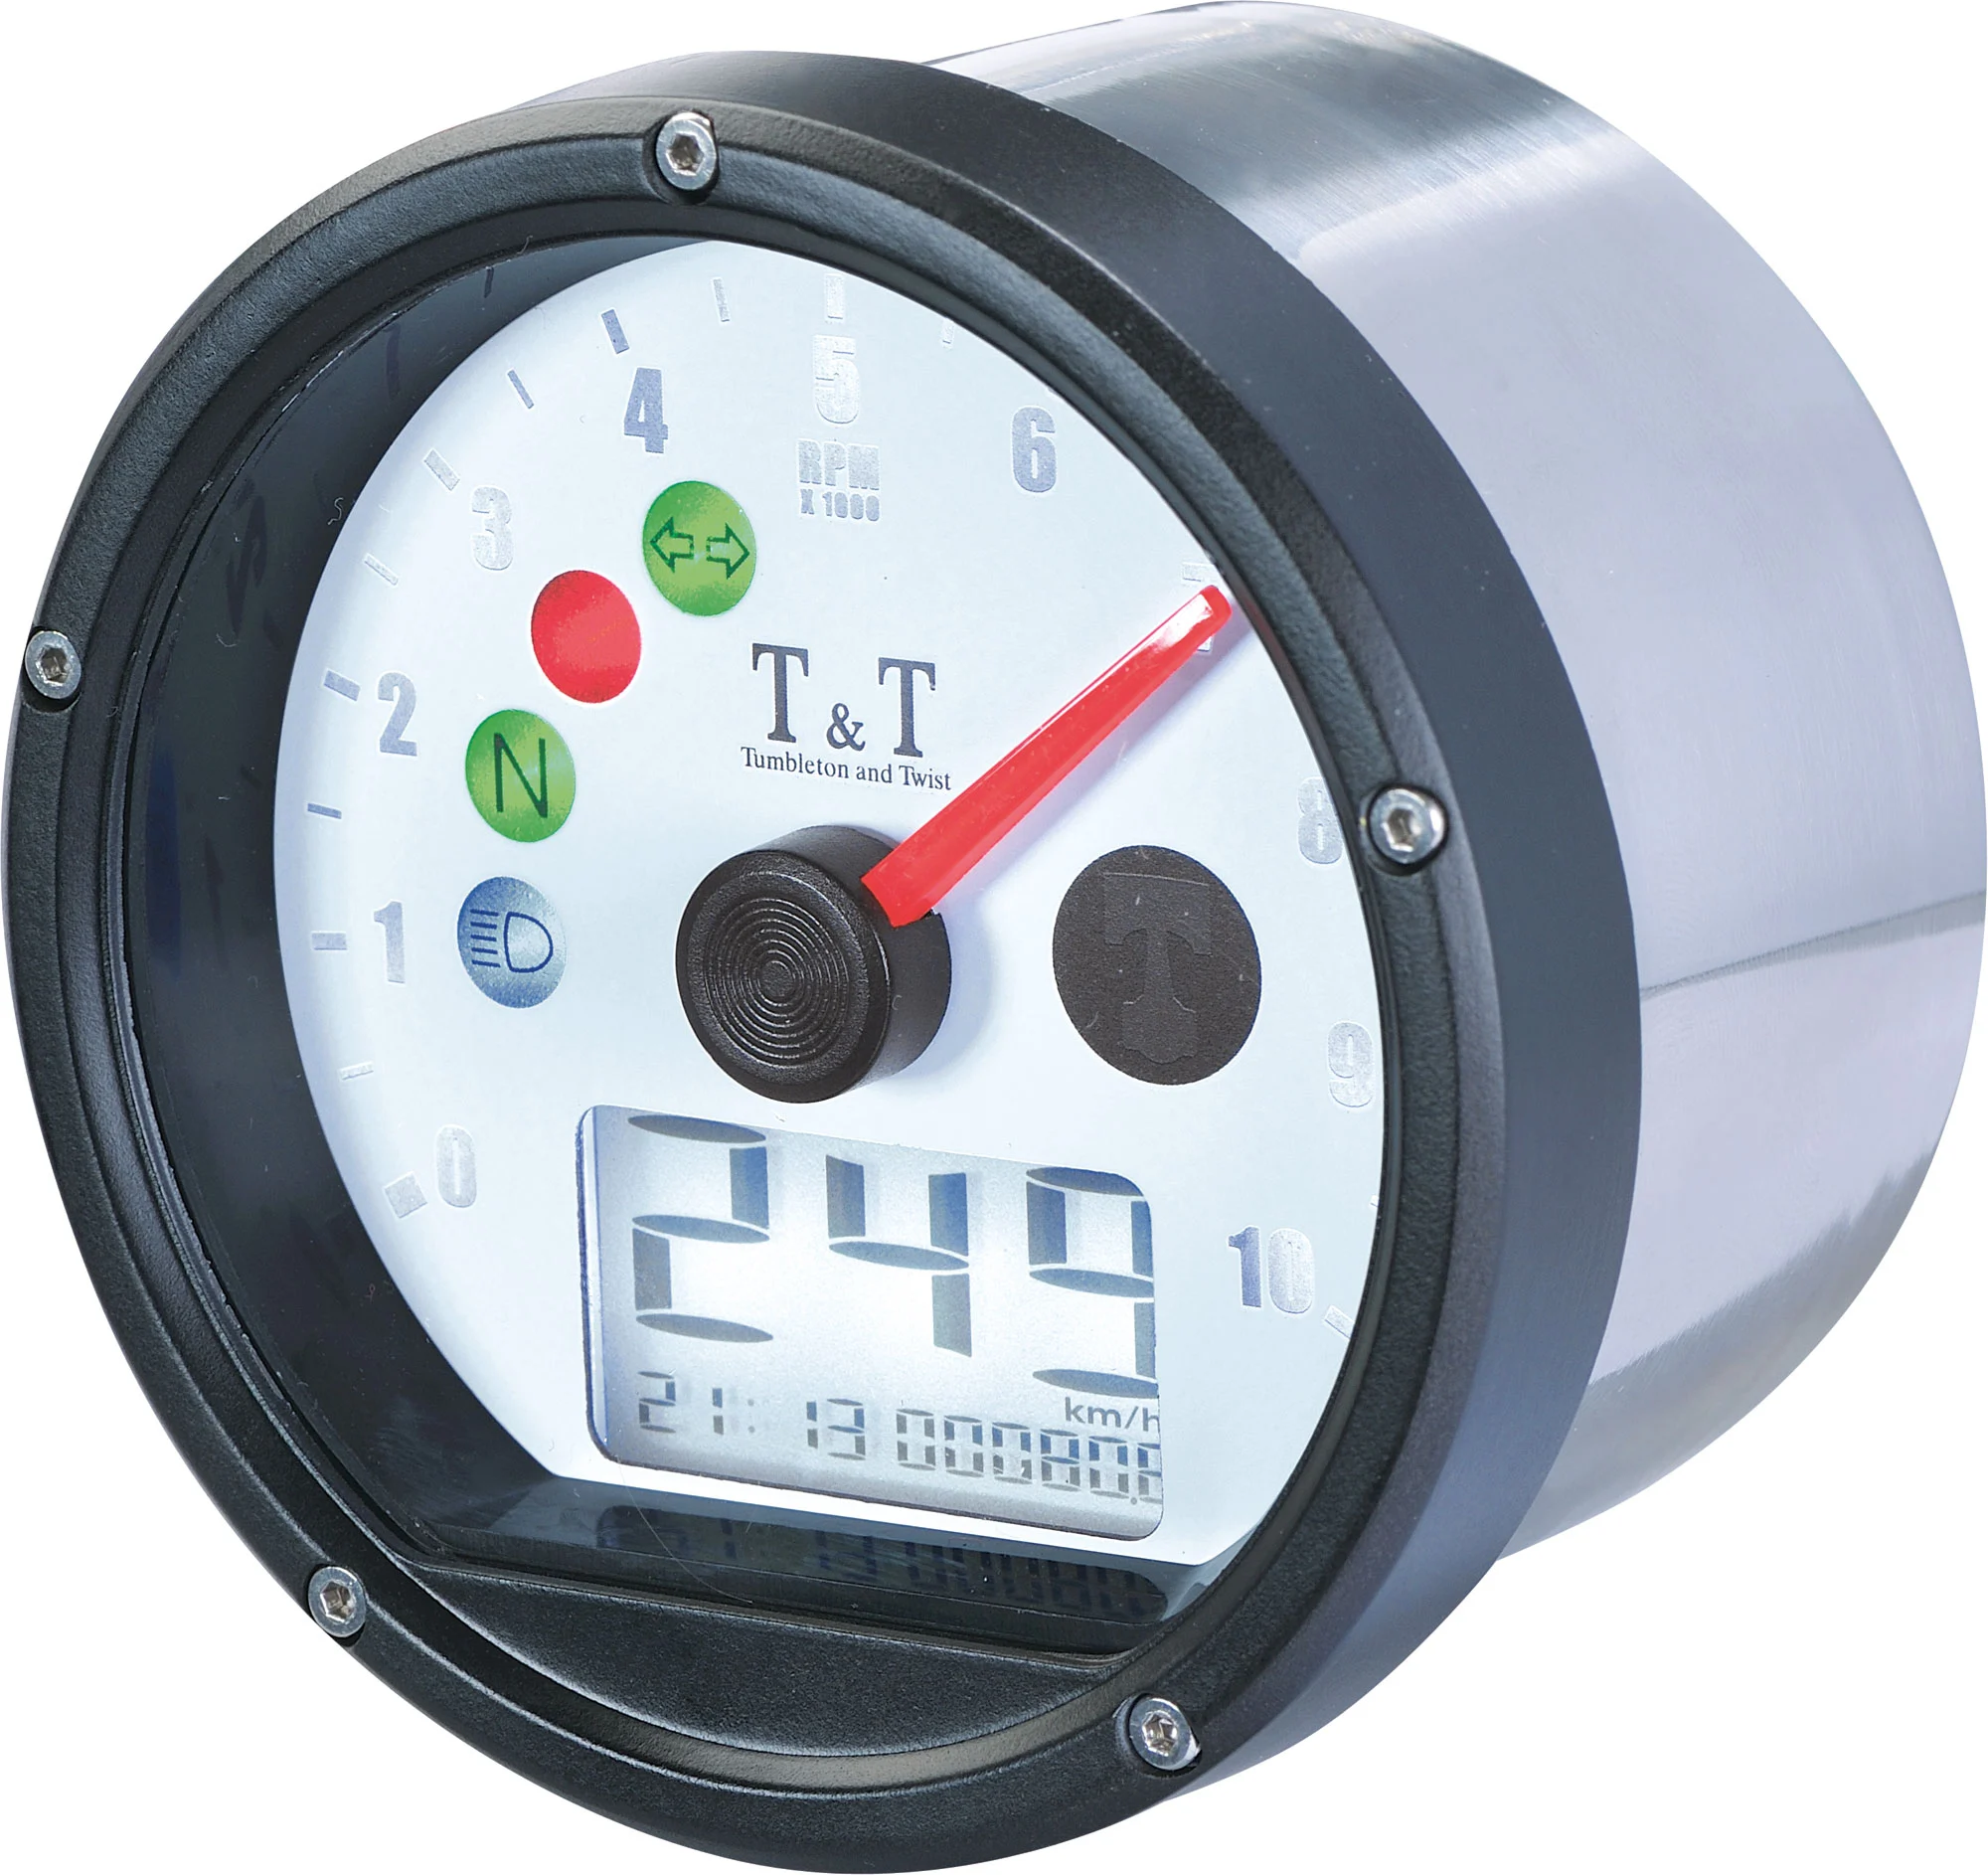 Tumbleton and Twist T&T Analog-Thermometer verschiedene Farben